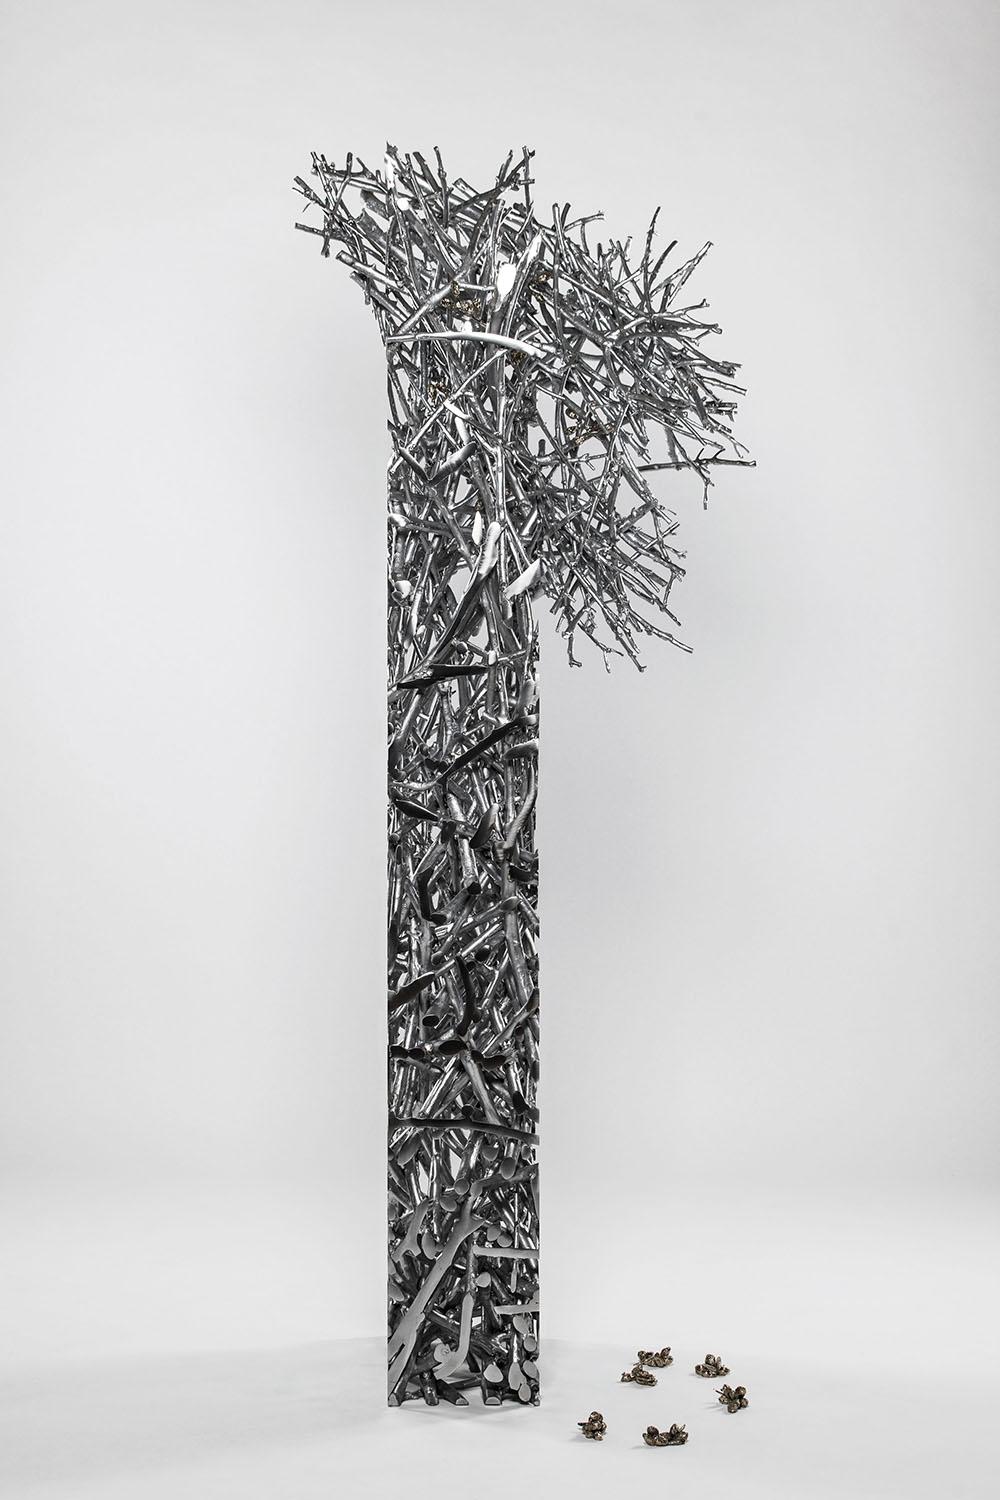 Skulptur aus Aluminium und Nickel, 200 cm × 50 cm × 75 cm. Einzigartige Arbeit.
In dieser Skulptur bearbeitet der Künstler ein wichtiges Thema in seiner Produktion, dem er einen hohen symbolischen Wert beimisst: Bäume. Ondřej Oliva interpretiert die